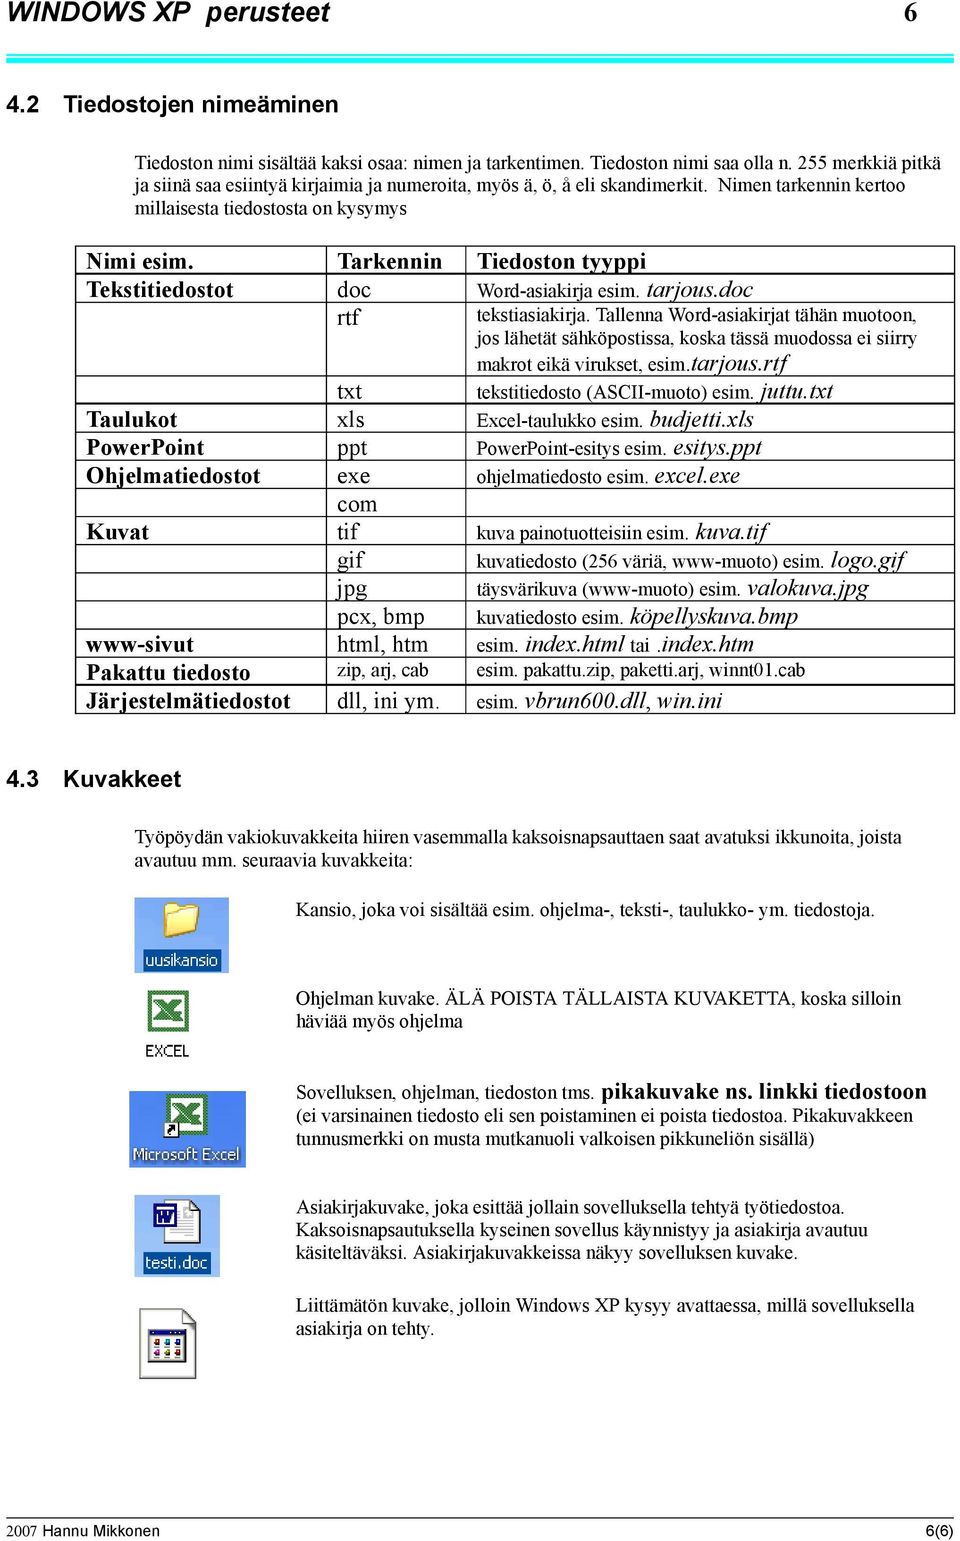 Tekstitiedostot Taulukot PowerPoint Ohjelmatiedostot Kuvat www-sivut Pakattu tiedosto Järjestelmätiedostot 4.